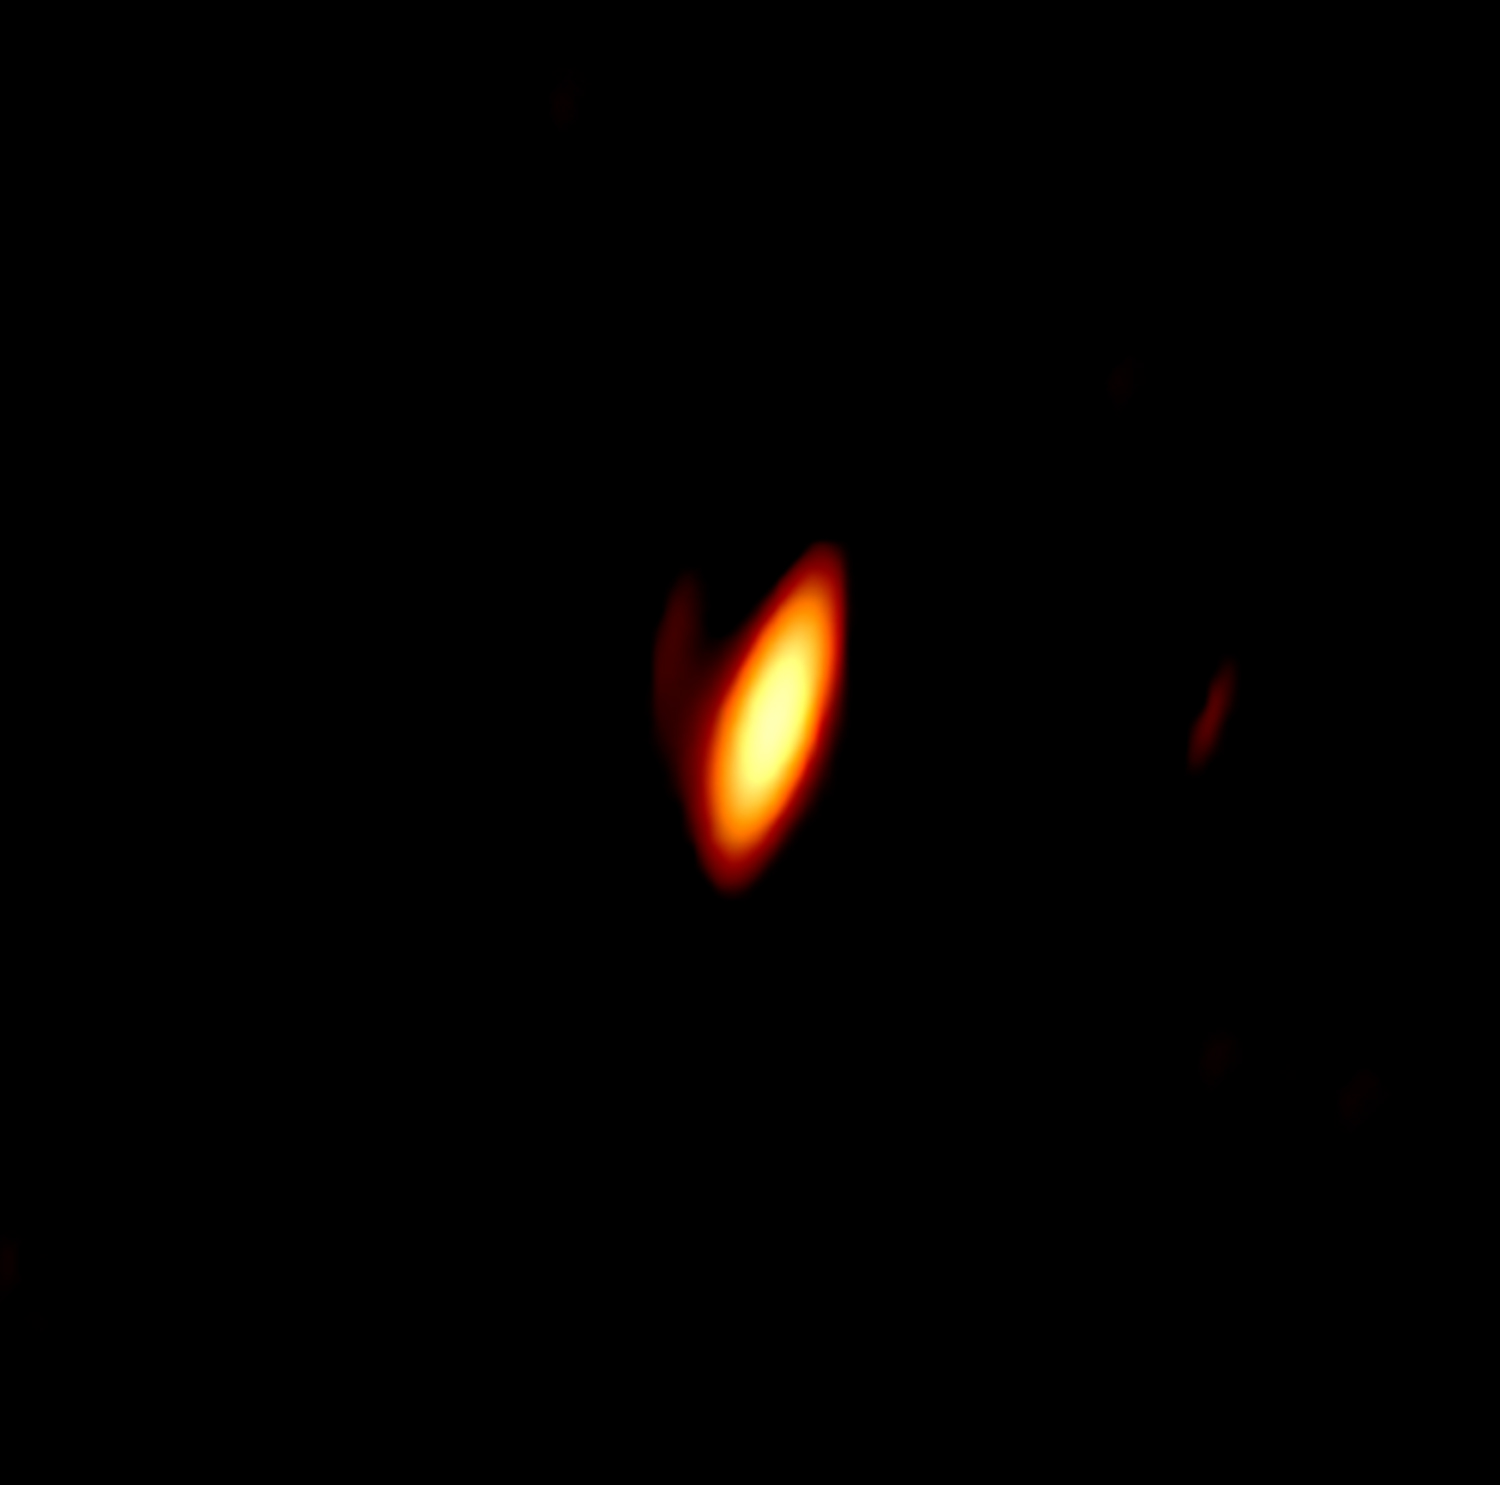 Obraz kwazara P172+18 uzyskany za pomocą radioteleskopów VLBA. Jest to kwazar odległy o około 13 miliardów l.św. (z=6.82). Pokazana jest wewnętrzna część dżetu o wielkości 171 x 60 l.św. (9.9 x 3.5 mas, gdzie 1 mas = 0.000001"). Źródło: Momjian et al., NRAO/AUI/NSF